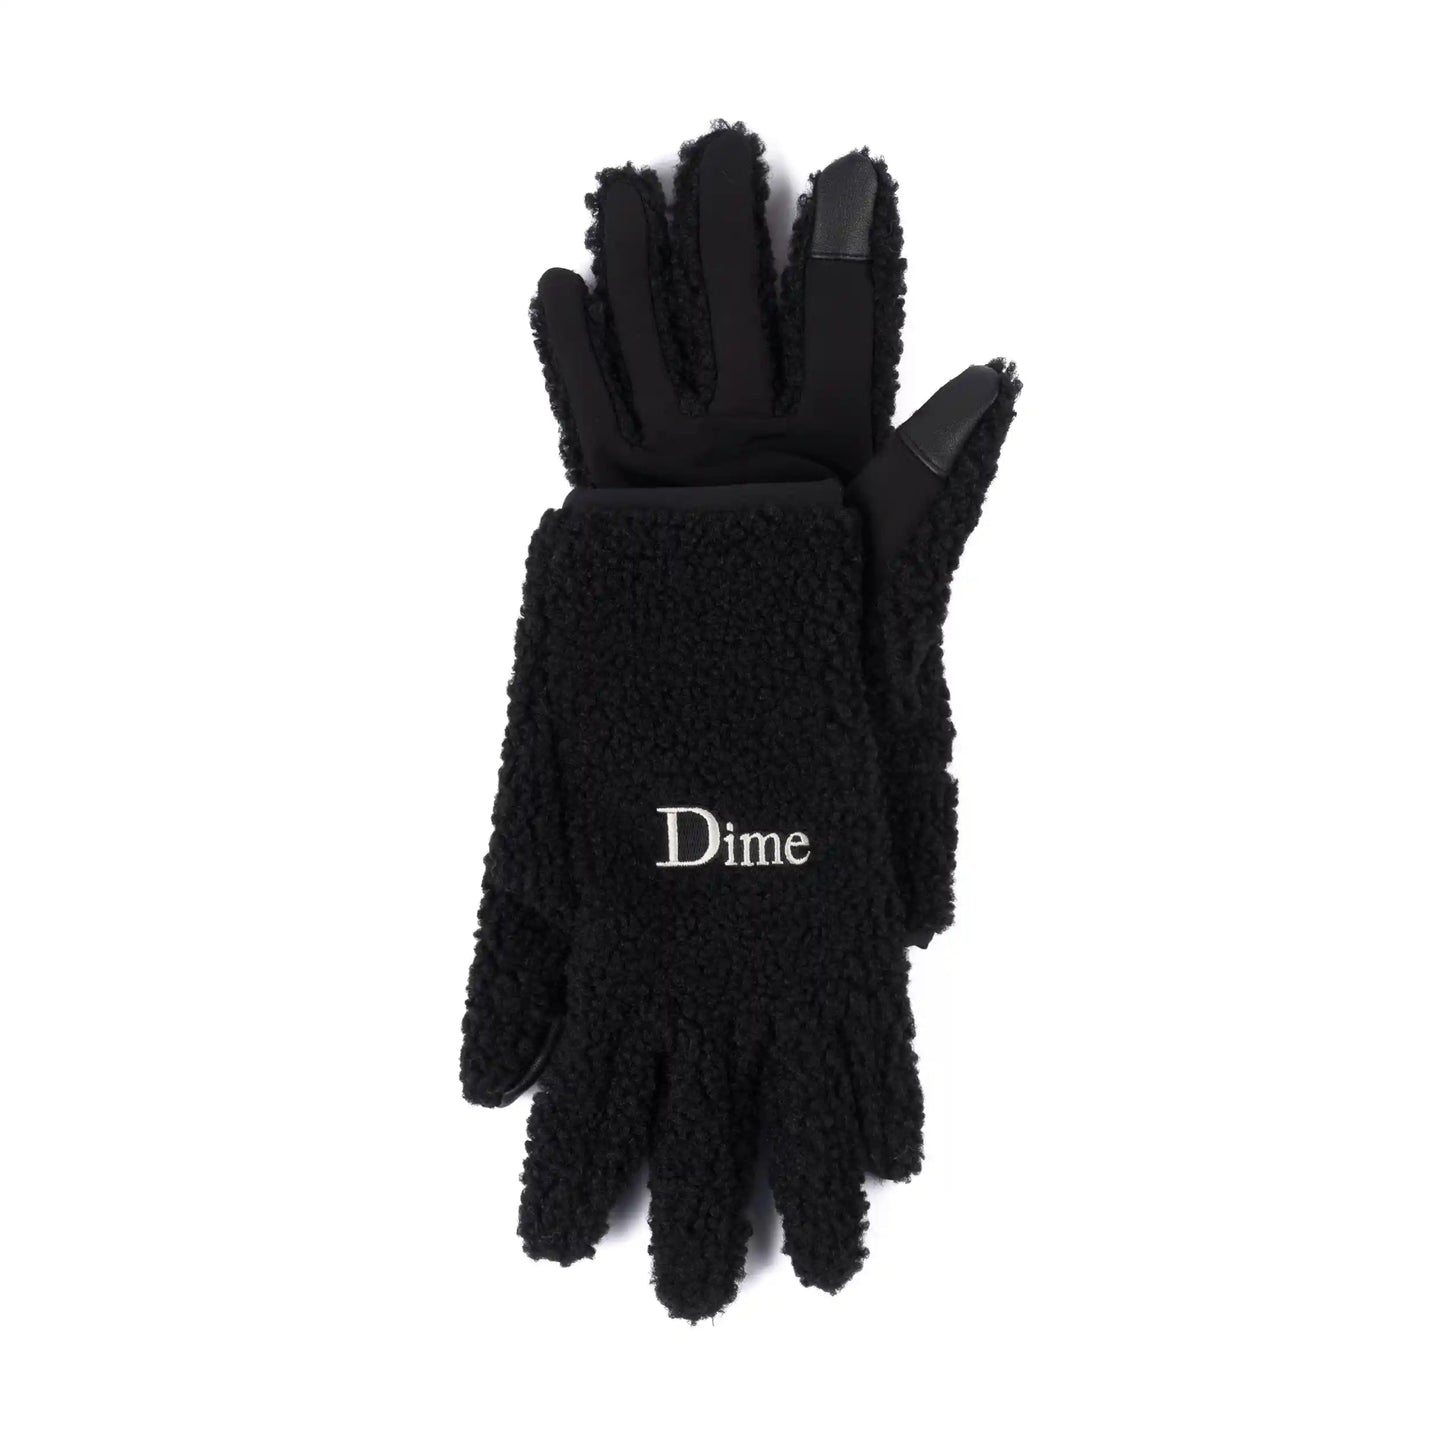 Dime Classic Polar Fleece Gloves, black - Tiki Room Skateboards - 1